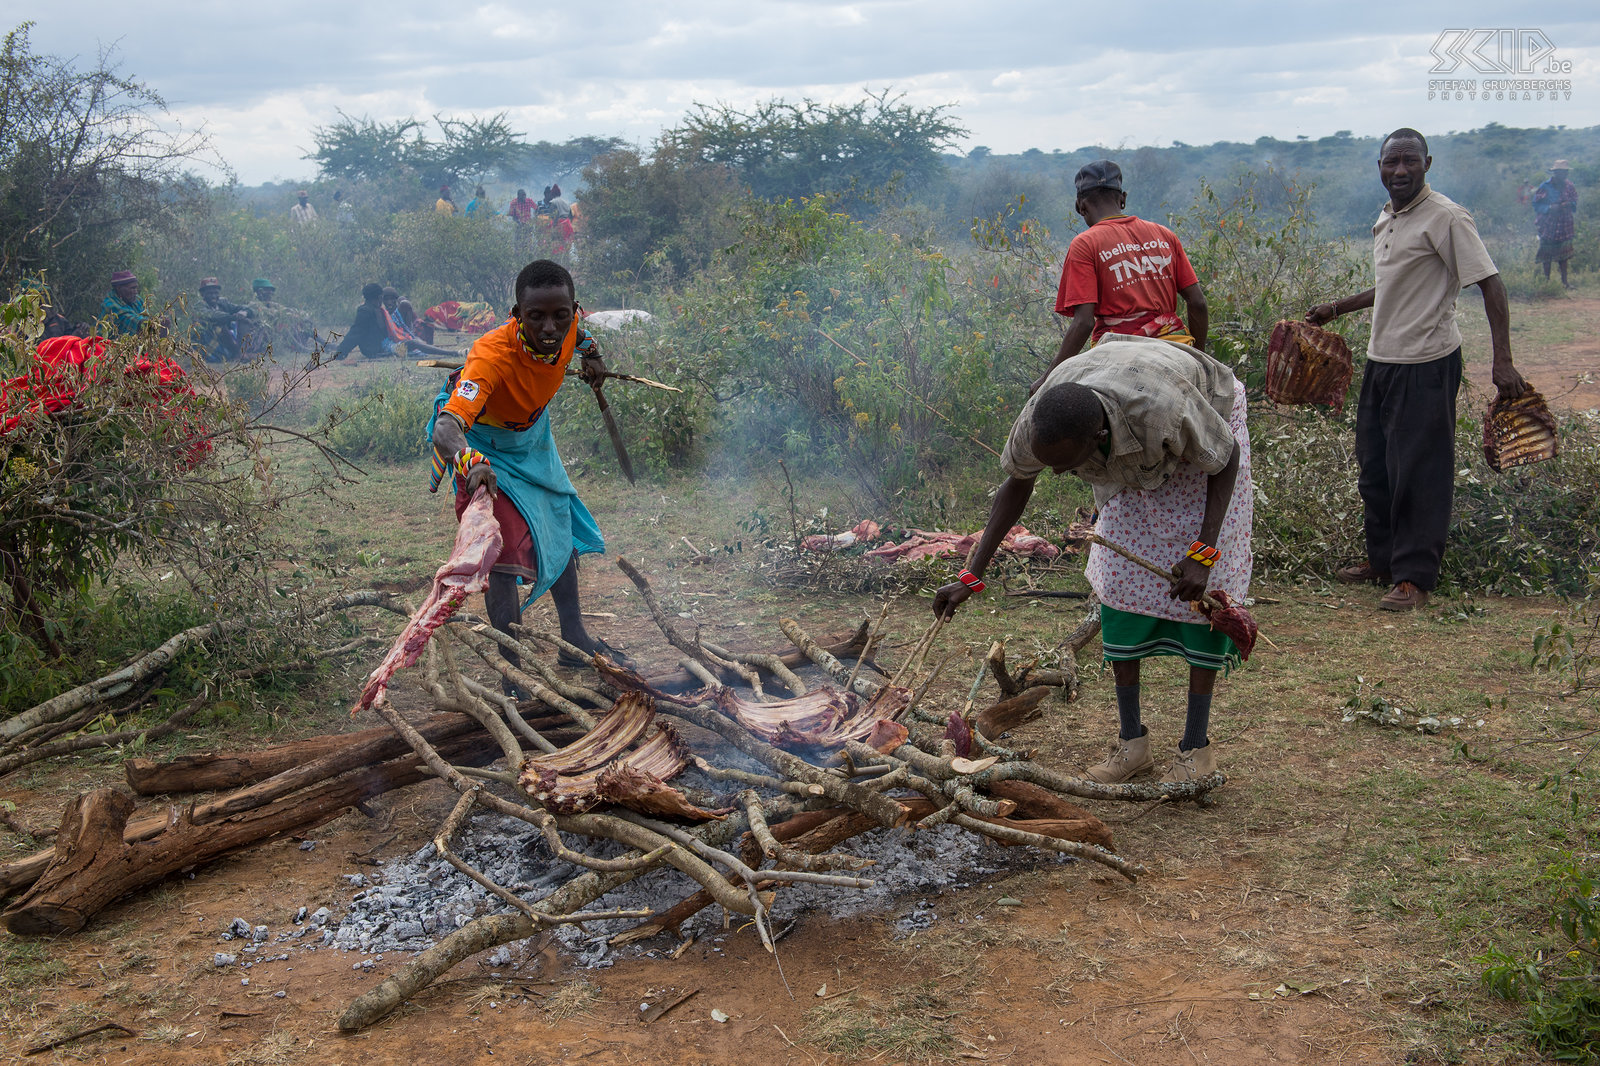 Kisima - Samburu lmuget - Roosteren van het vlees In de late namiddag starten de mzee (oudere mannen) met het roosteren van het vlees voor het feest dat ‘s avonds zal worden gehouden. Stefan Cruysberghs